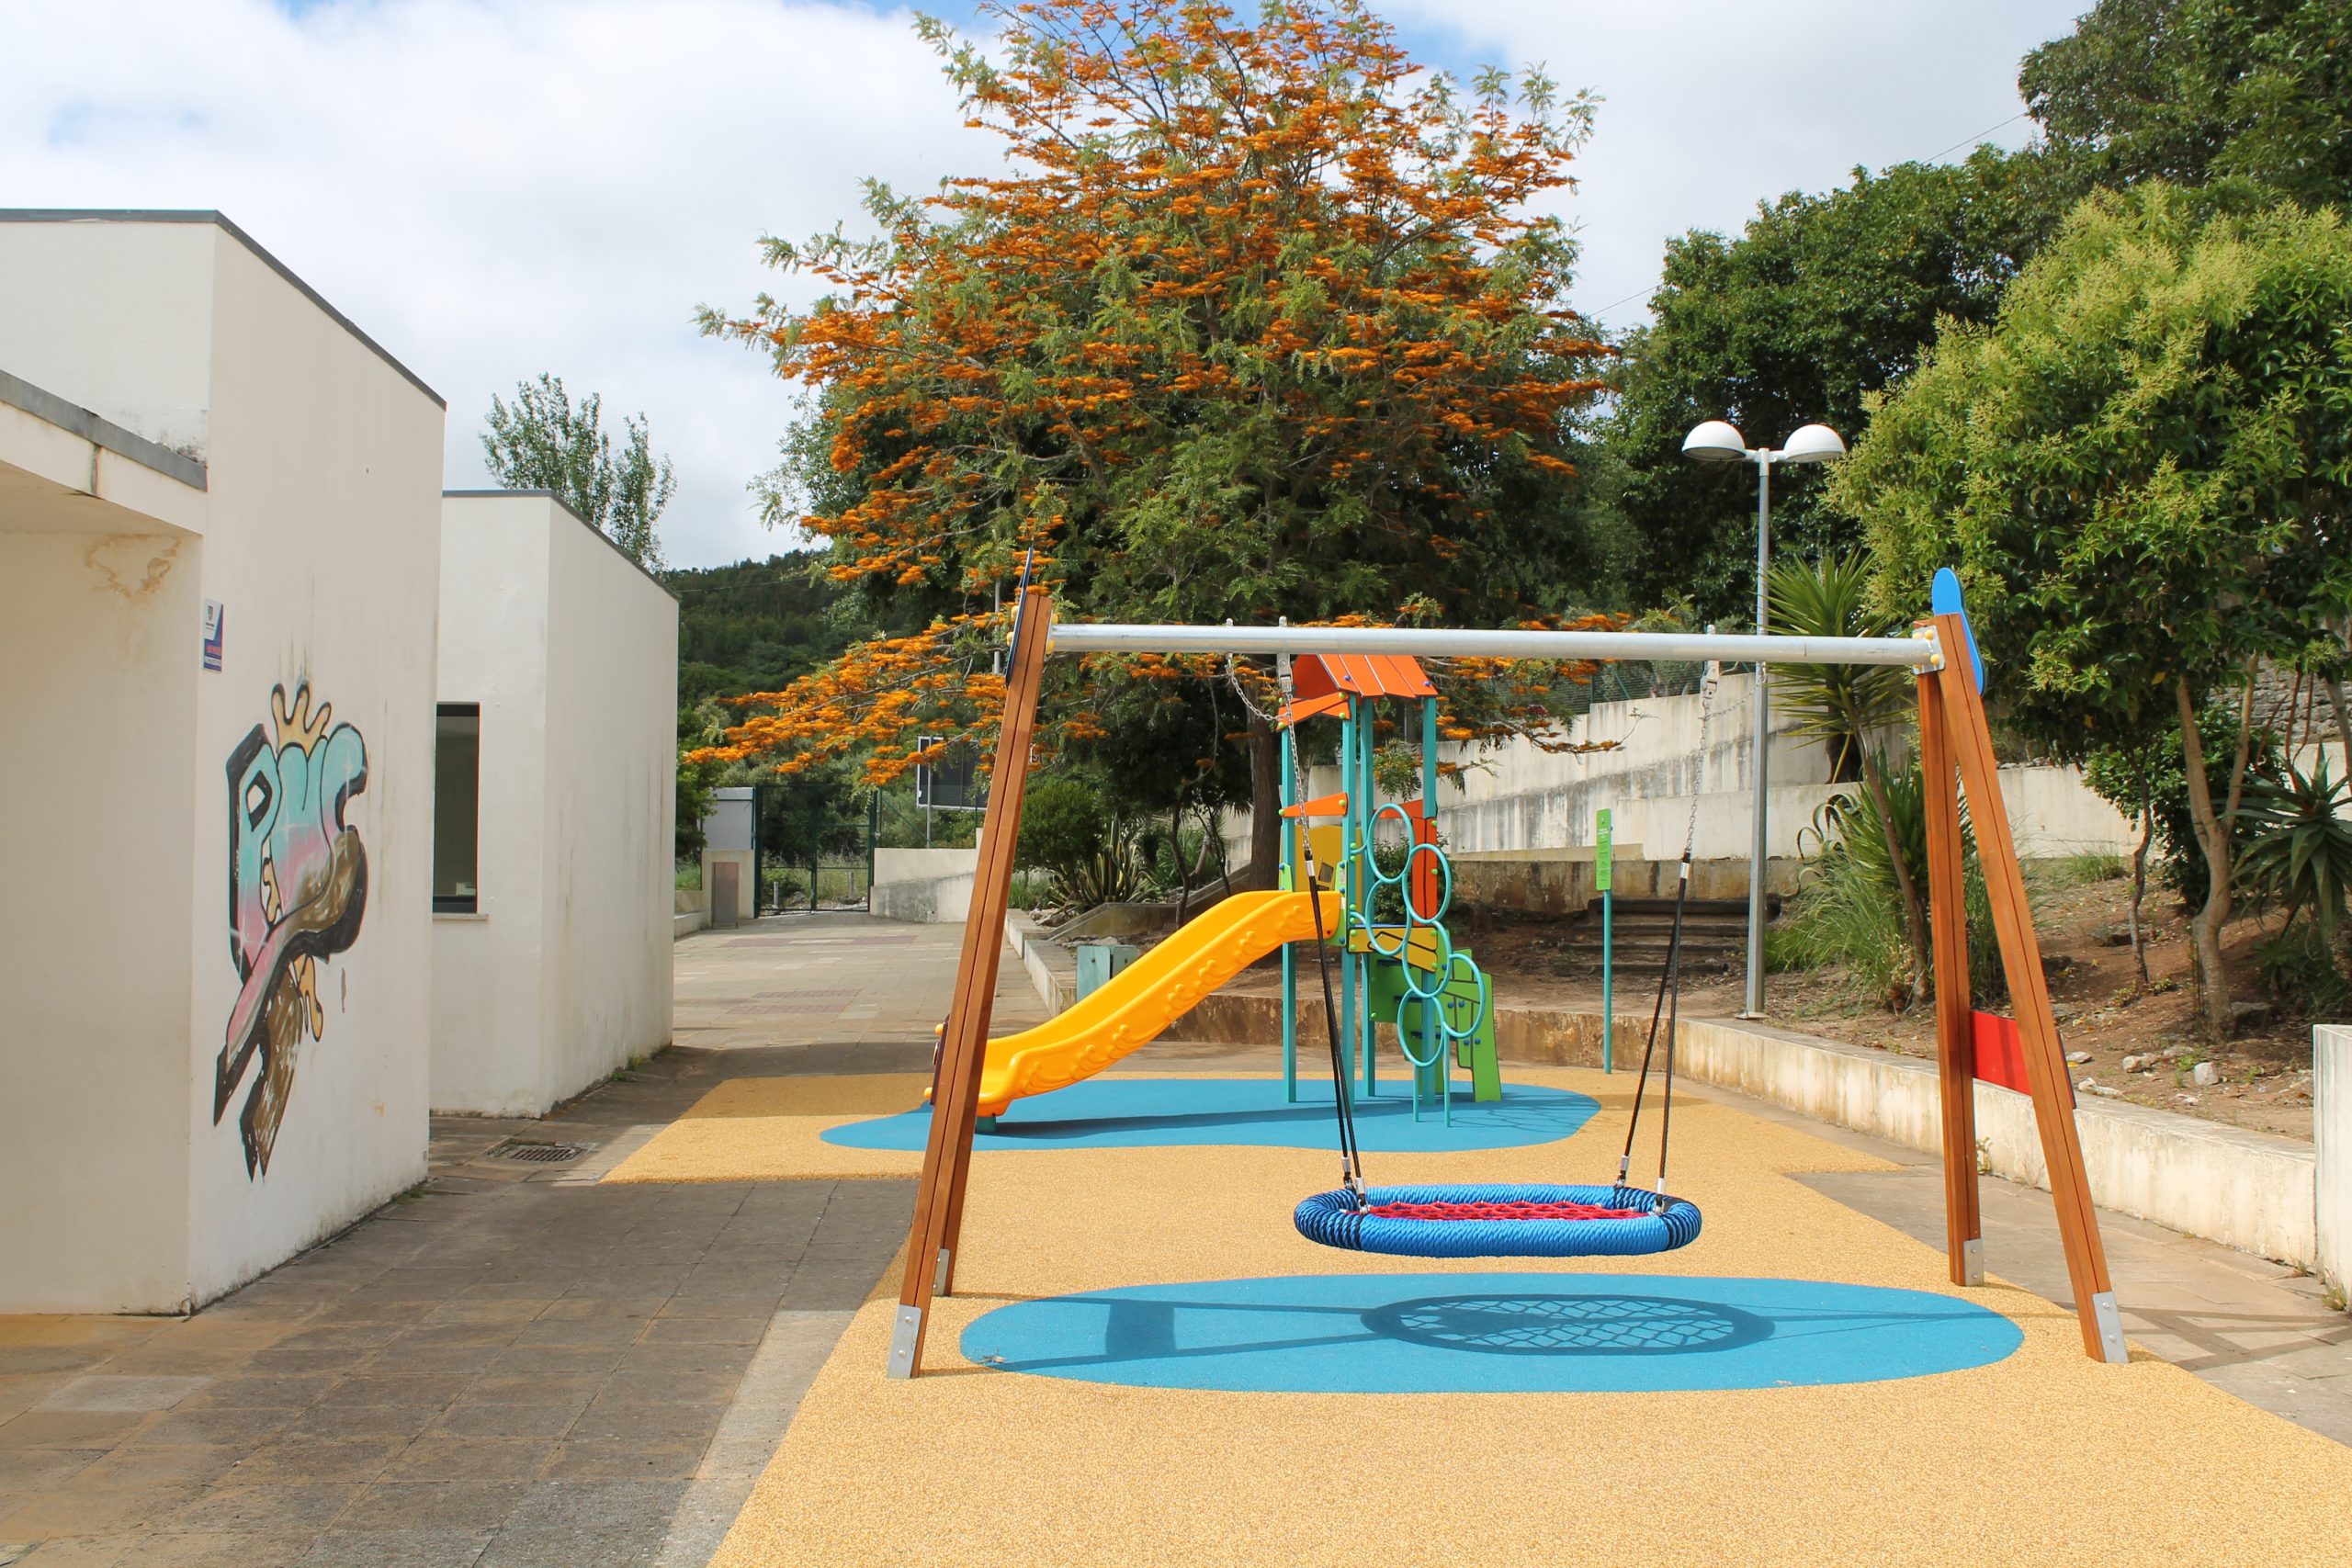 Fanhões -(f) – Escola EB1/JI de Fanhões – Novo Parque Infantil – Um novo Espaço de Brincadeira para as Crianças da Escola de Fanhões !